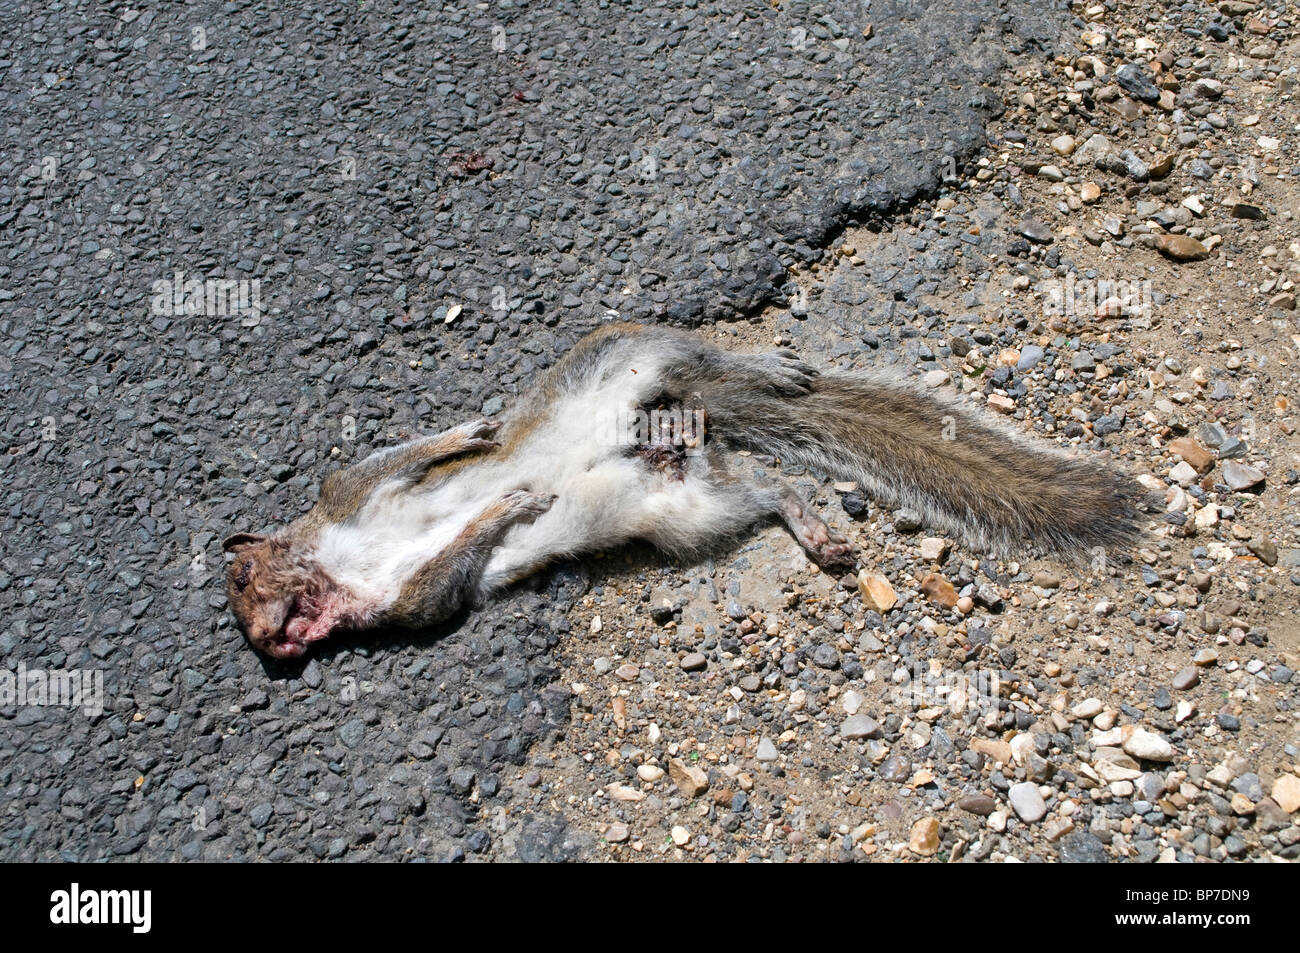 Road Kill, ein totes Tier, ein graues Eichhörnchen liegt tot auf einer Straße, die wahrscheinlich von einem vorbeifahrenden Autofahrer in ein Auto gelaufen Stockfoto